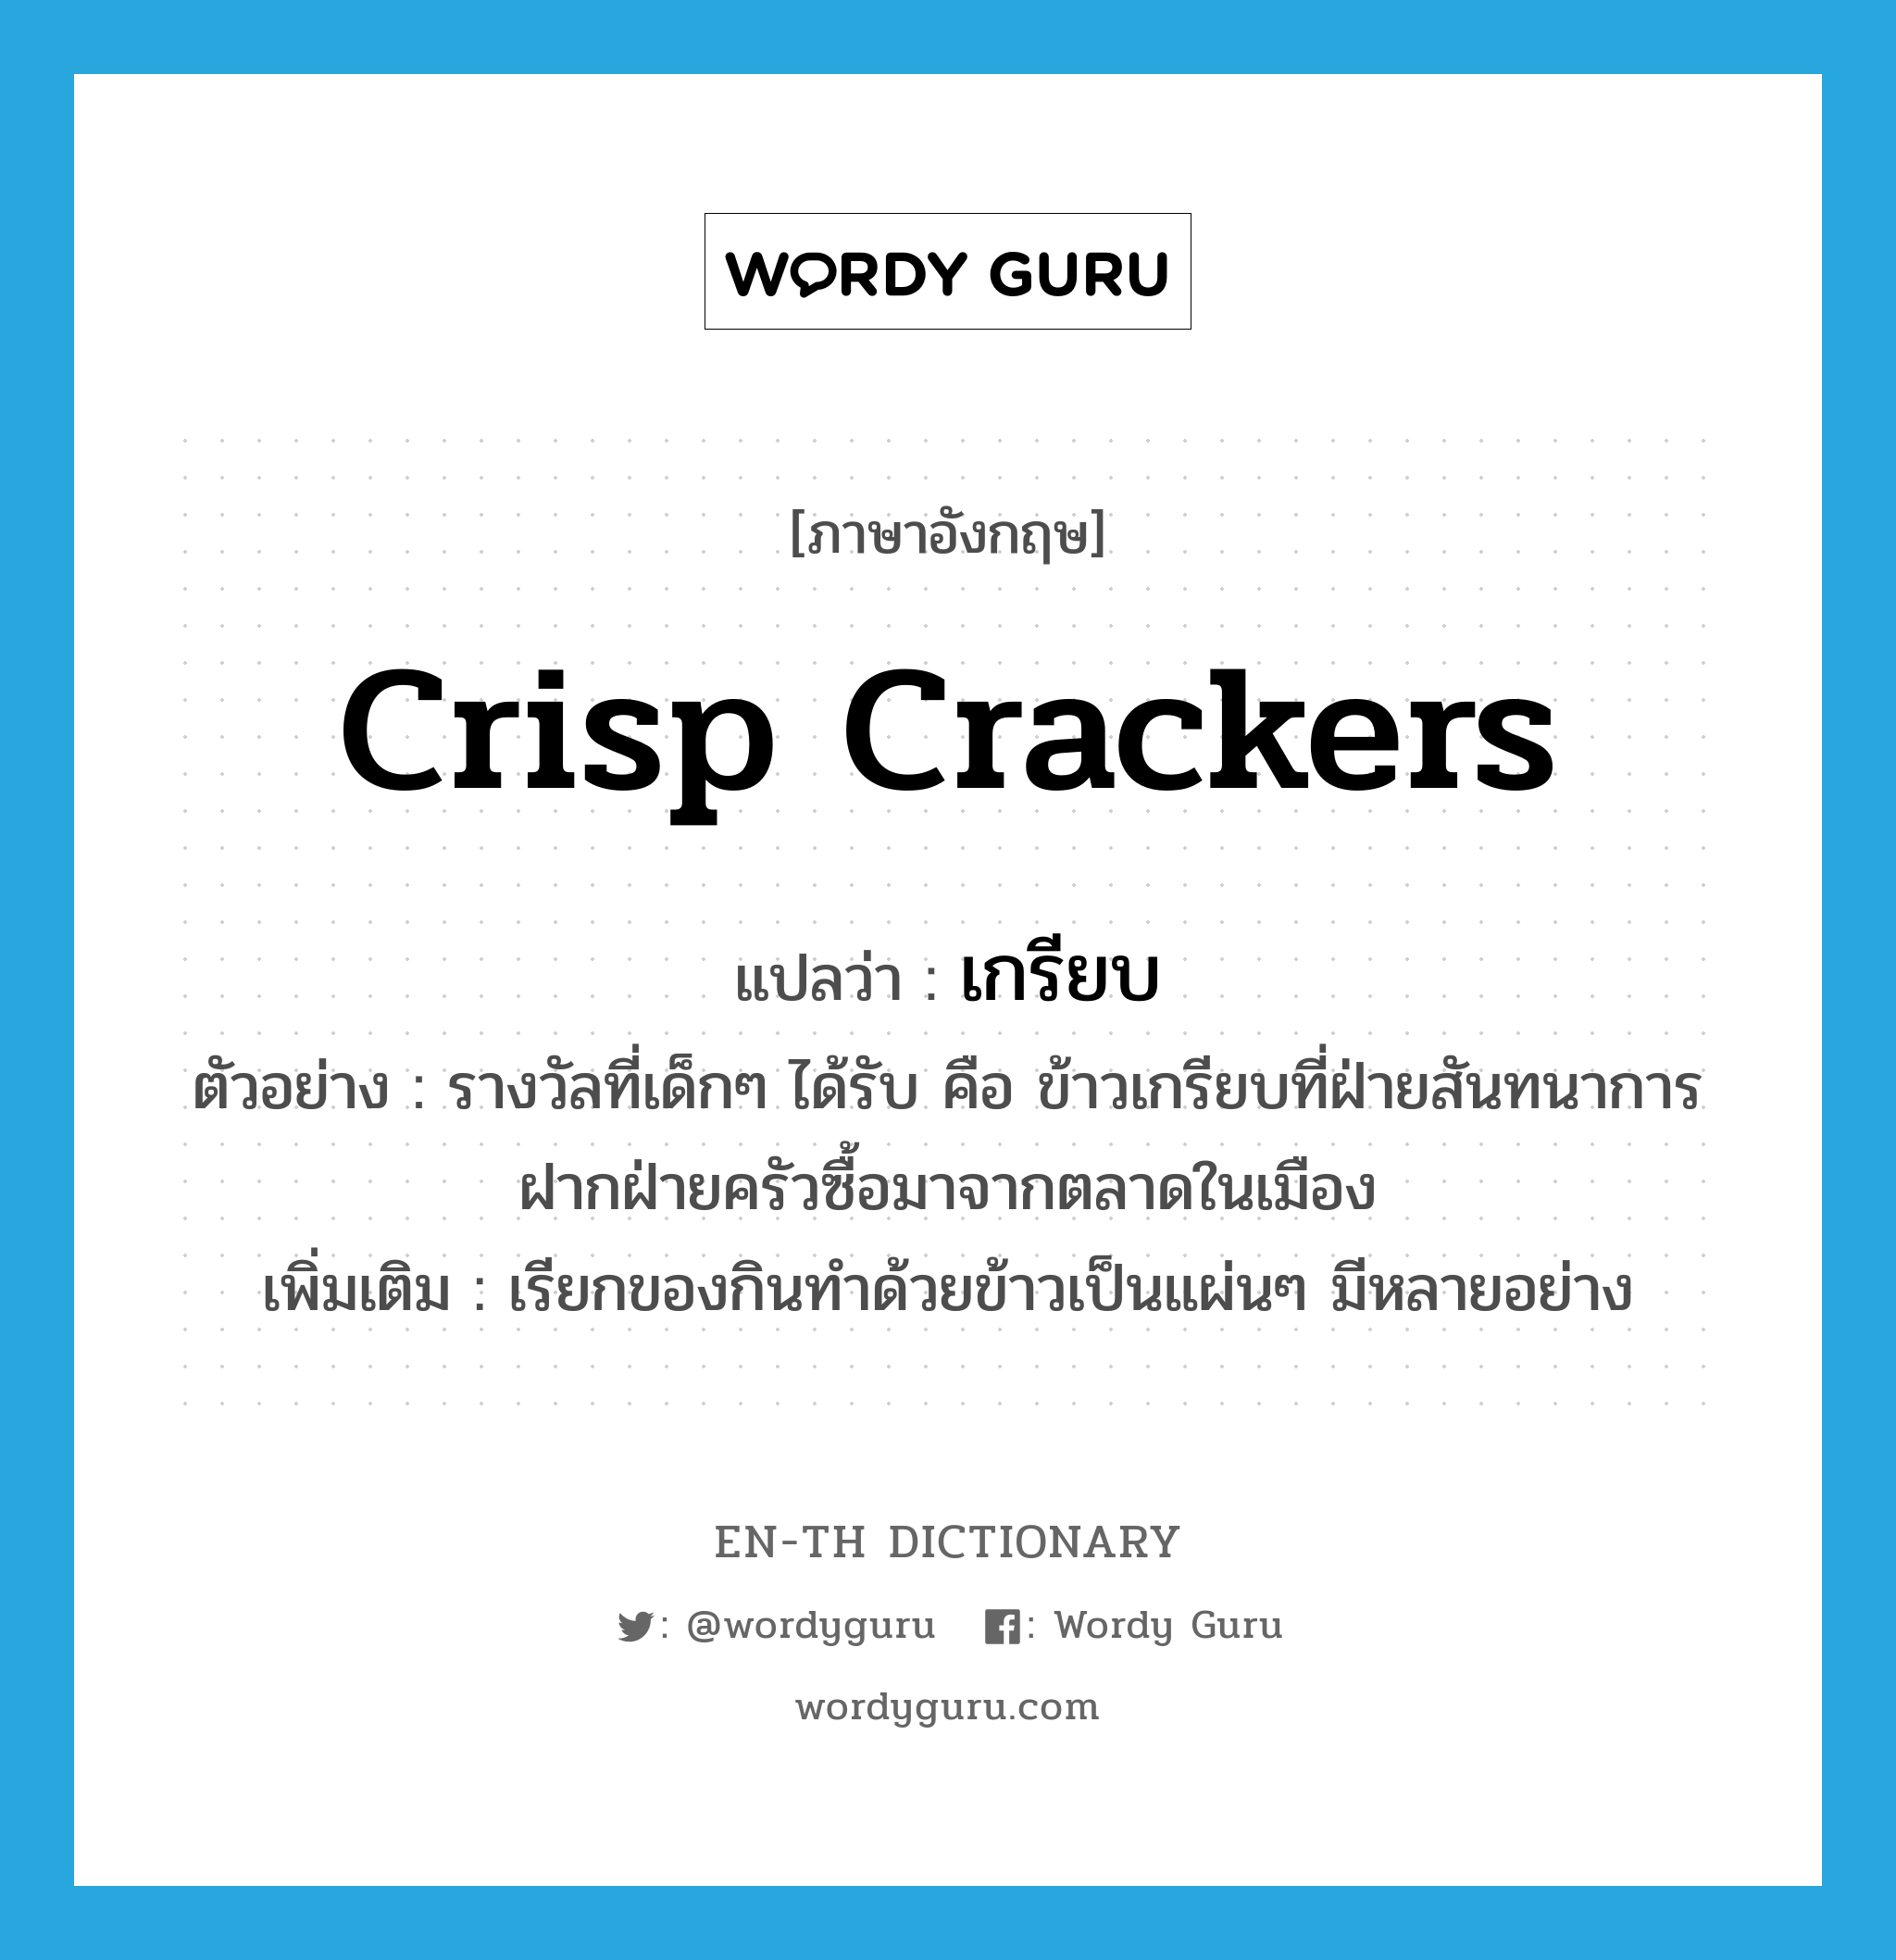 crisp crackers แปลว่า?, คำศัพท์ภาษาอังกฤษ crisp crackers แปลว่า เกรียบ ประเภท N ตัวอย่าง รางวัลที่เด็กๆ ได้รับ คือ ข้าวเกรียบที่ฝ่ายสันทนาการฝากฝ่ายครัวซื้อมาจากตลาดในเมือง เพิ่มเติม เรียกของกินทำด้วยข้าวเป็นแผ่นๆ มีหลายอย่าง หมวด N